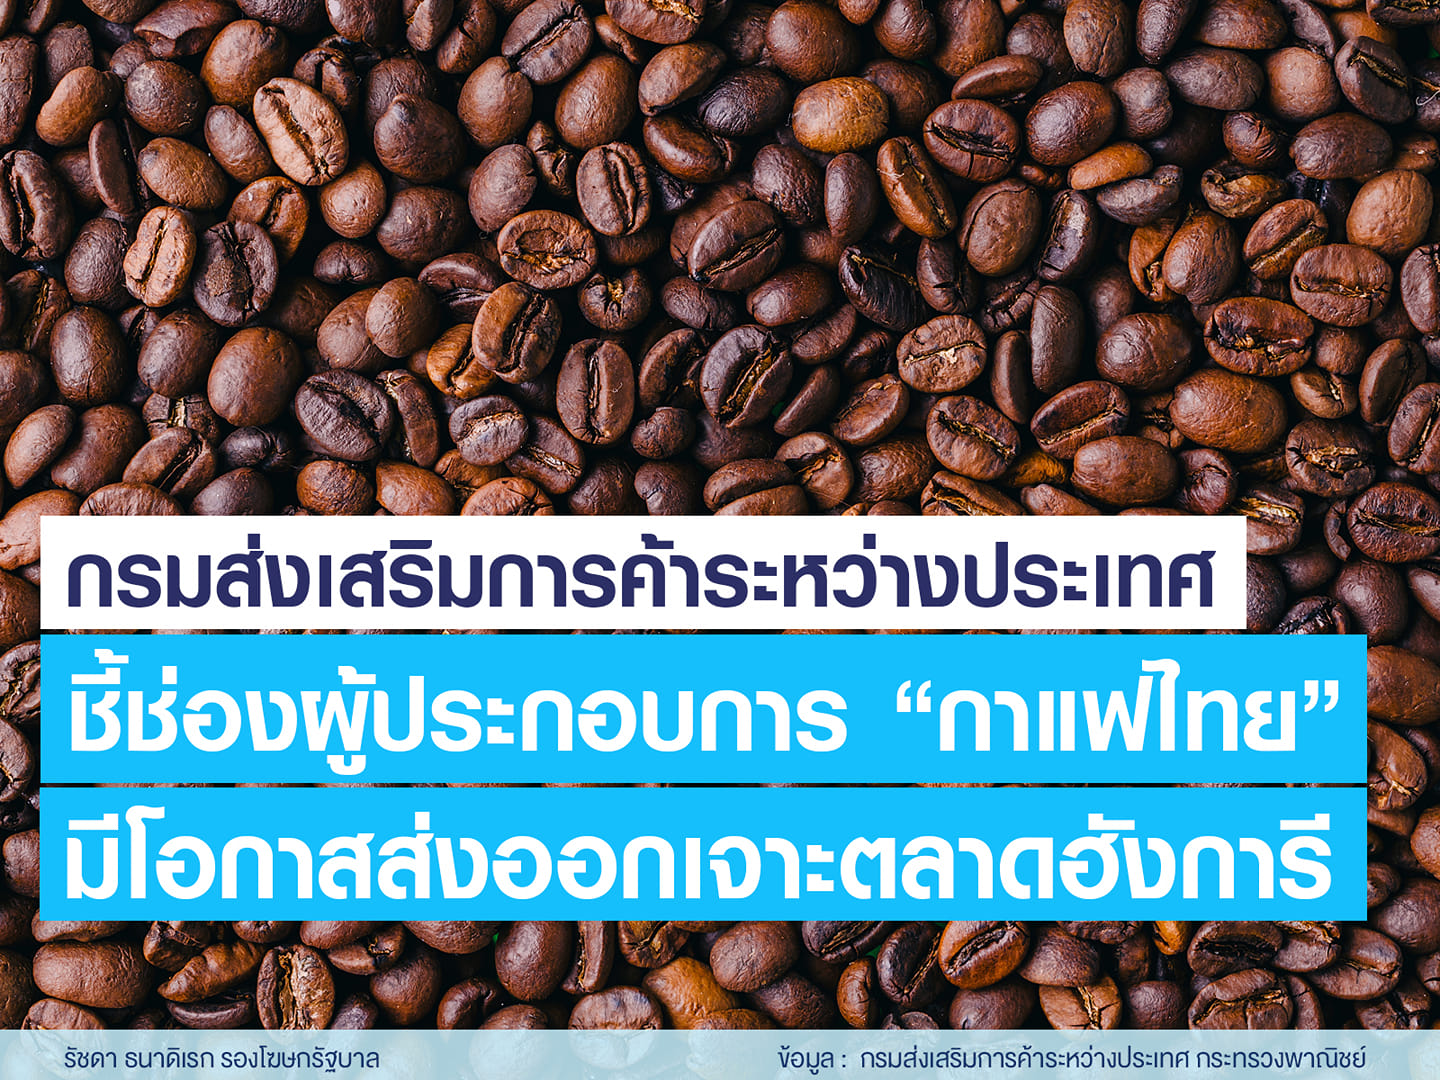 “กาแฟไทย” มีโอกาสขยายการส่งออกเจาะตลาดฮังการี